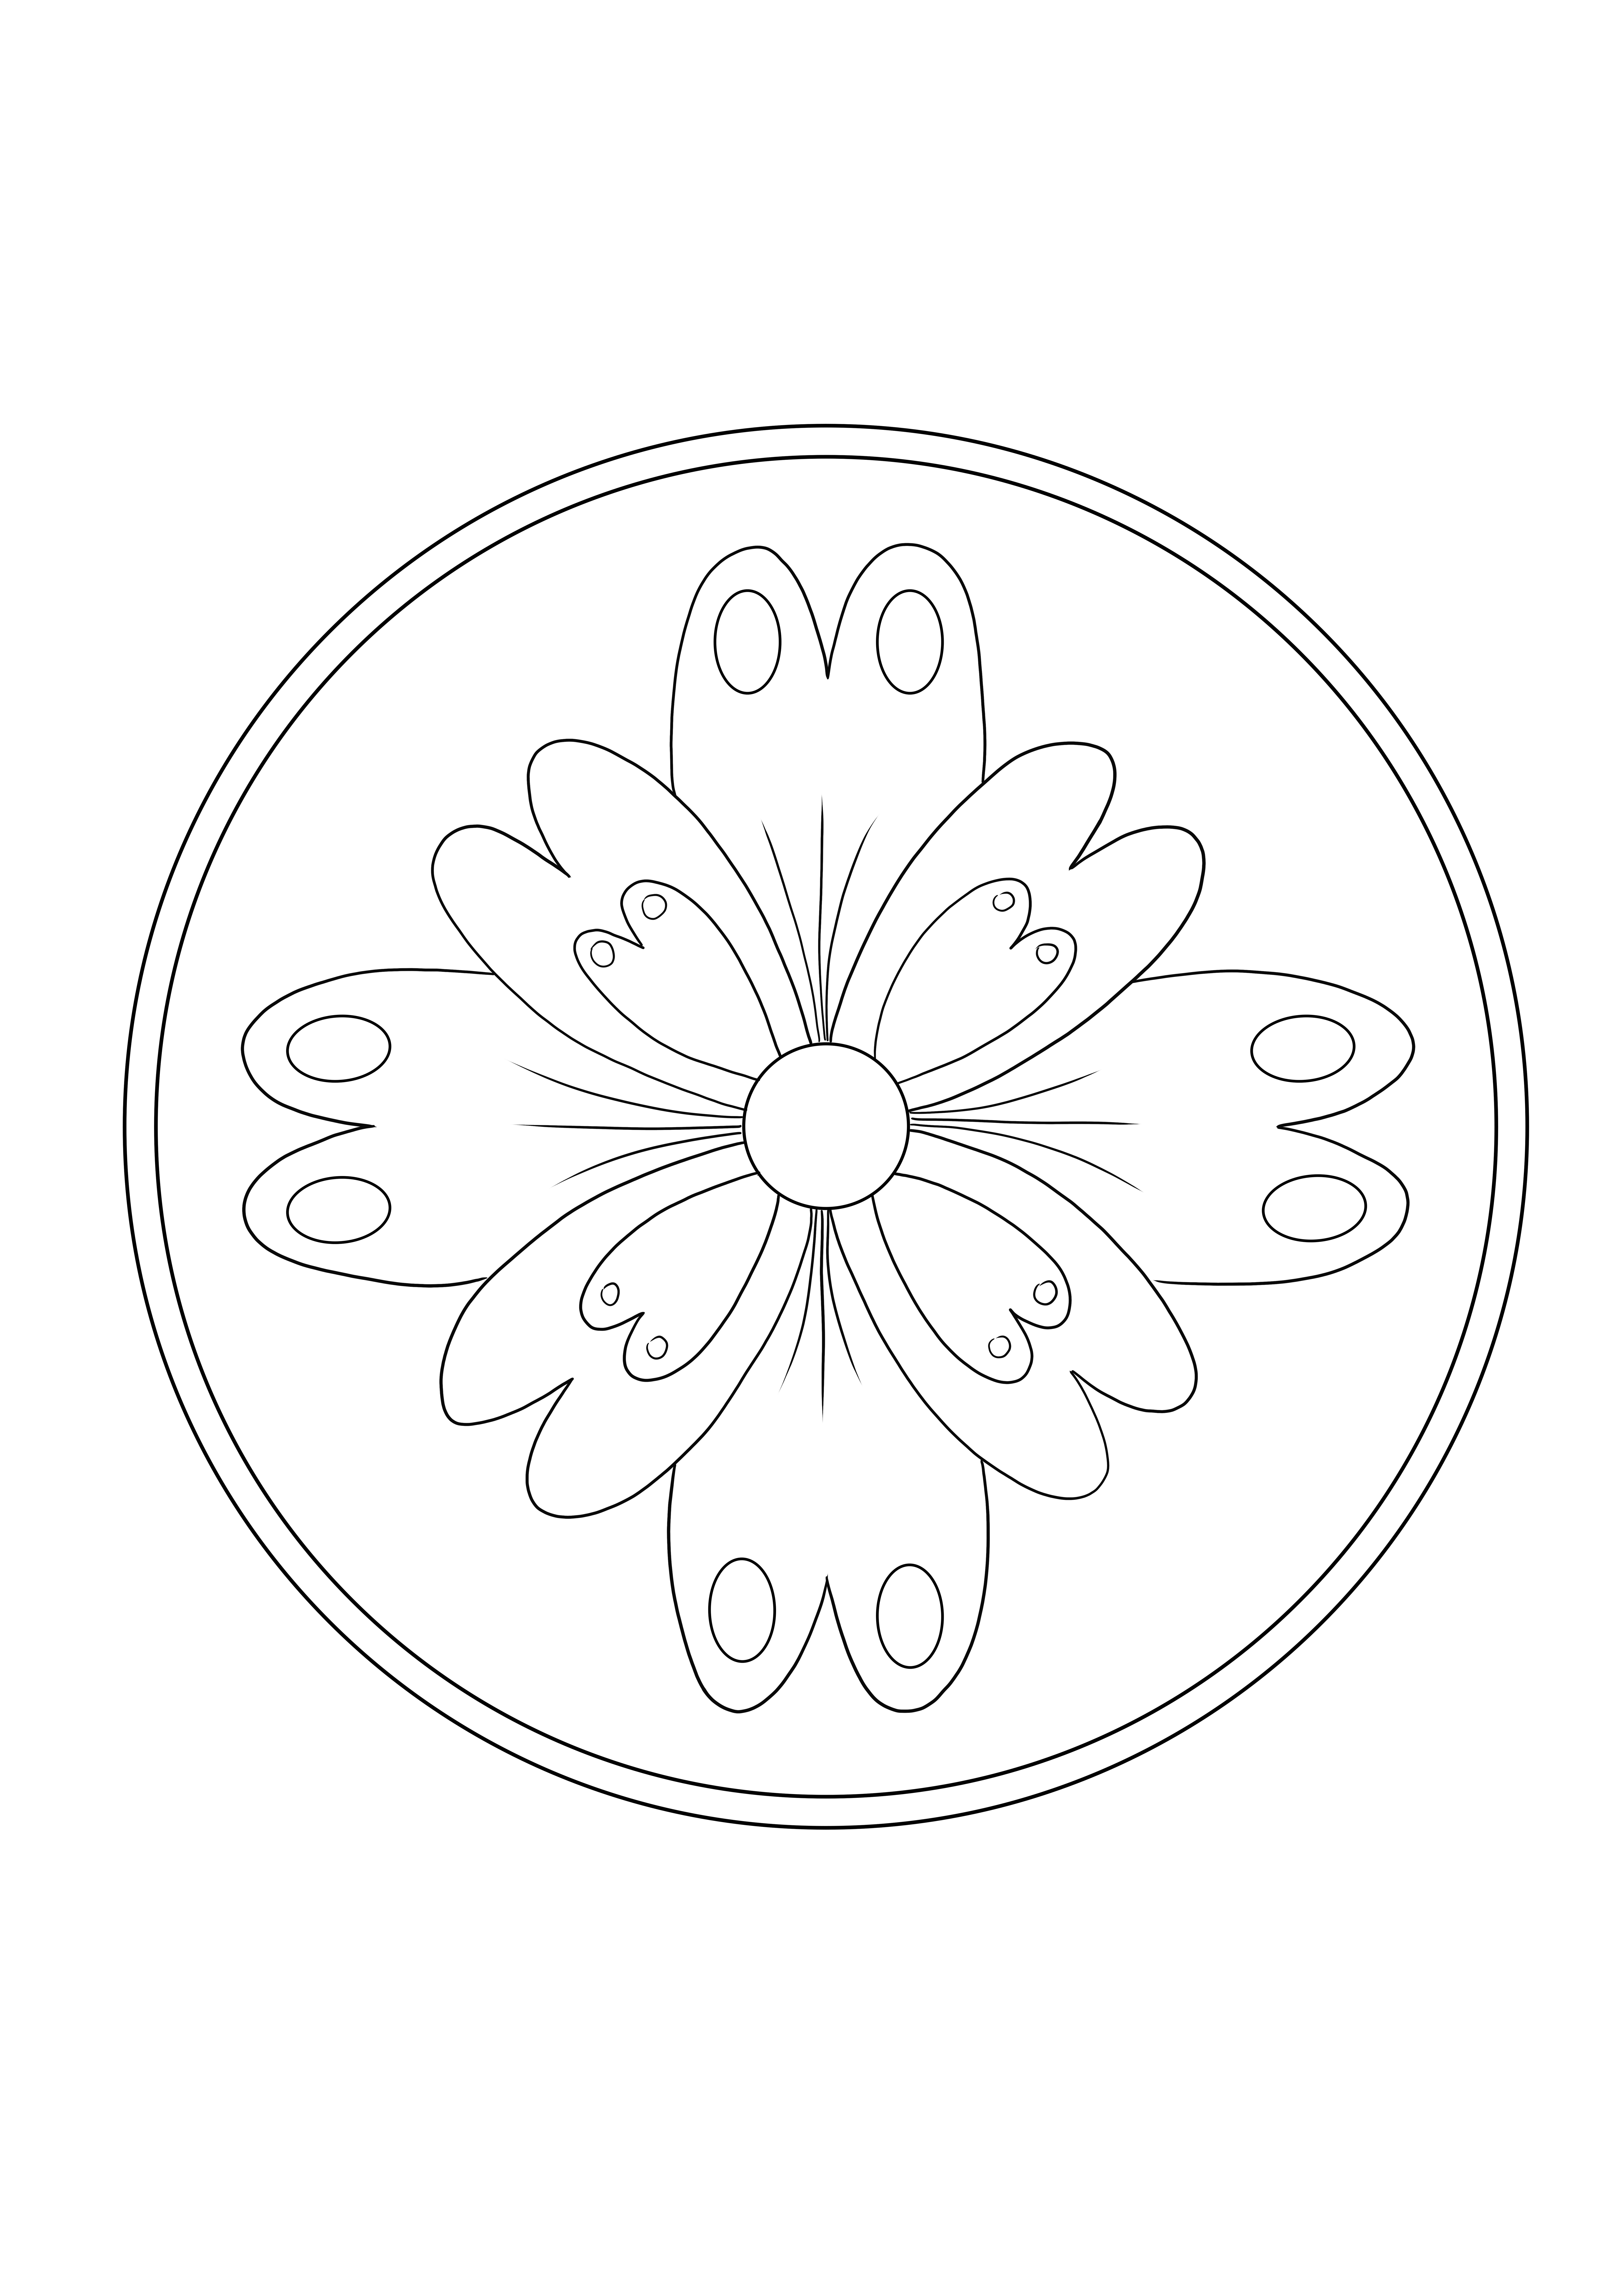 Easy Mandala Flower est gratuit à télécharger et à colorier